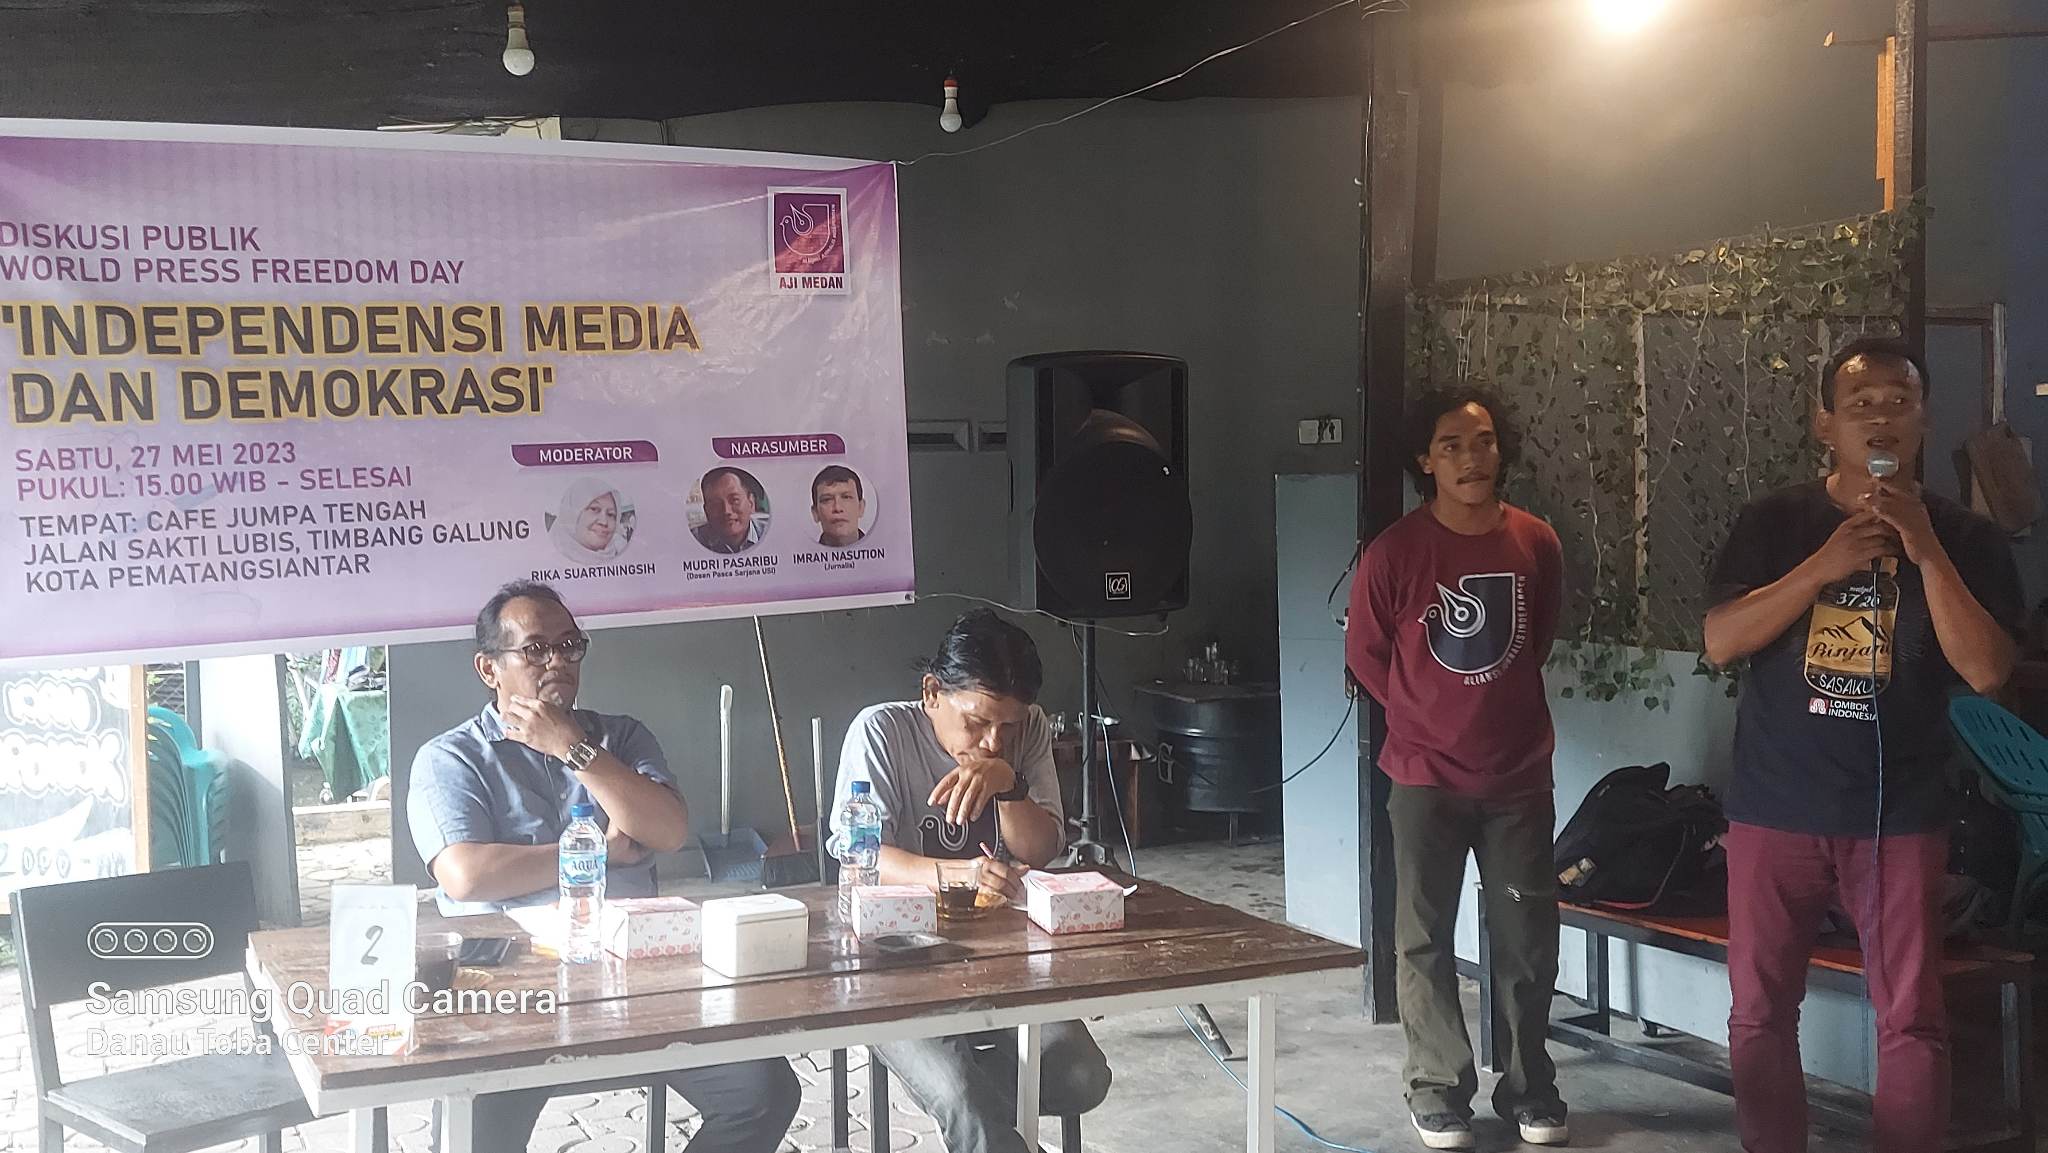 AJI Medan Harapkan Independensi Media Jelang Pemilu 2024, Hindari Pemberitaan Pemecah Belah Bangsa